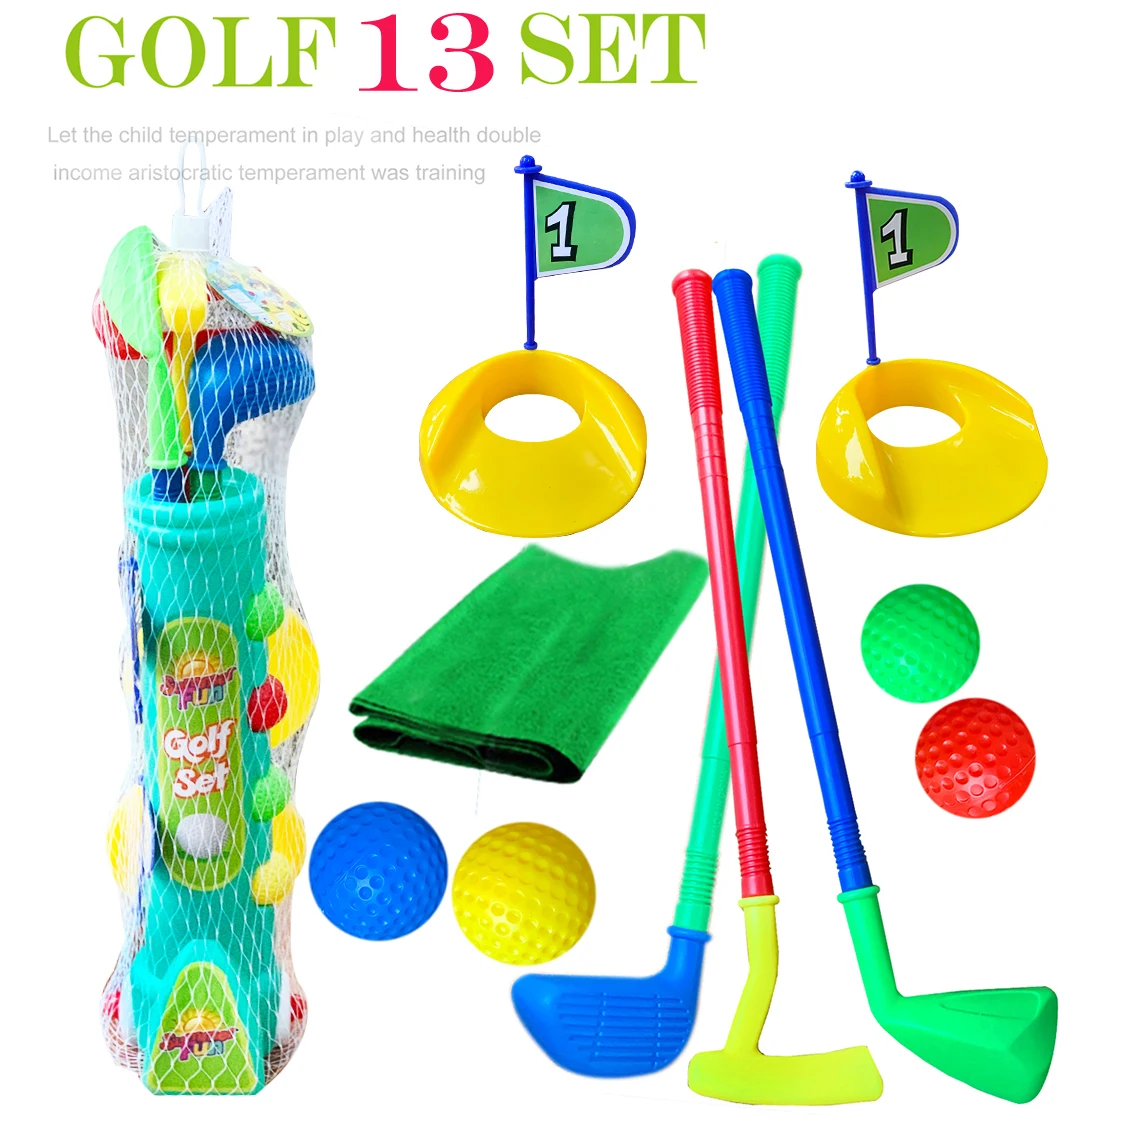 Спортивные игрушки Game Pro. Набор для игры в гольф, 3 удочки и 7 тренировочных комплектов, гольфист с тележкой для детей от 1 до 3 лет, цветной